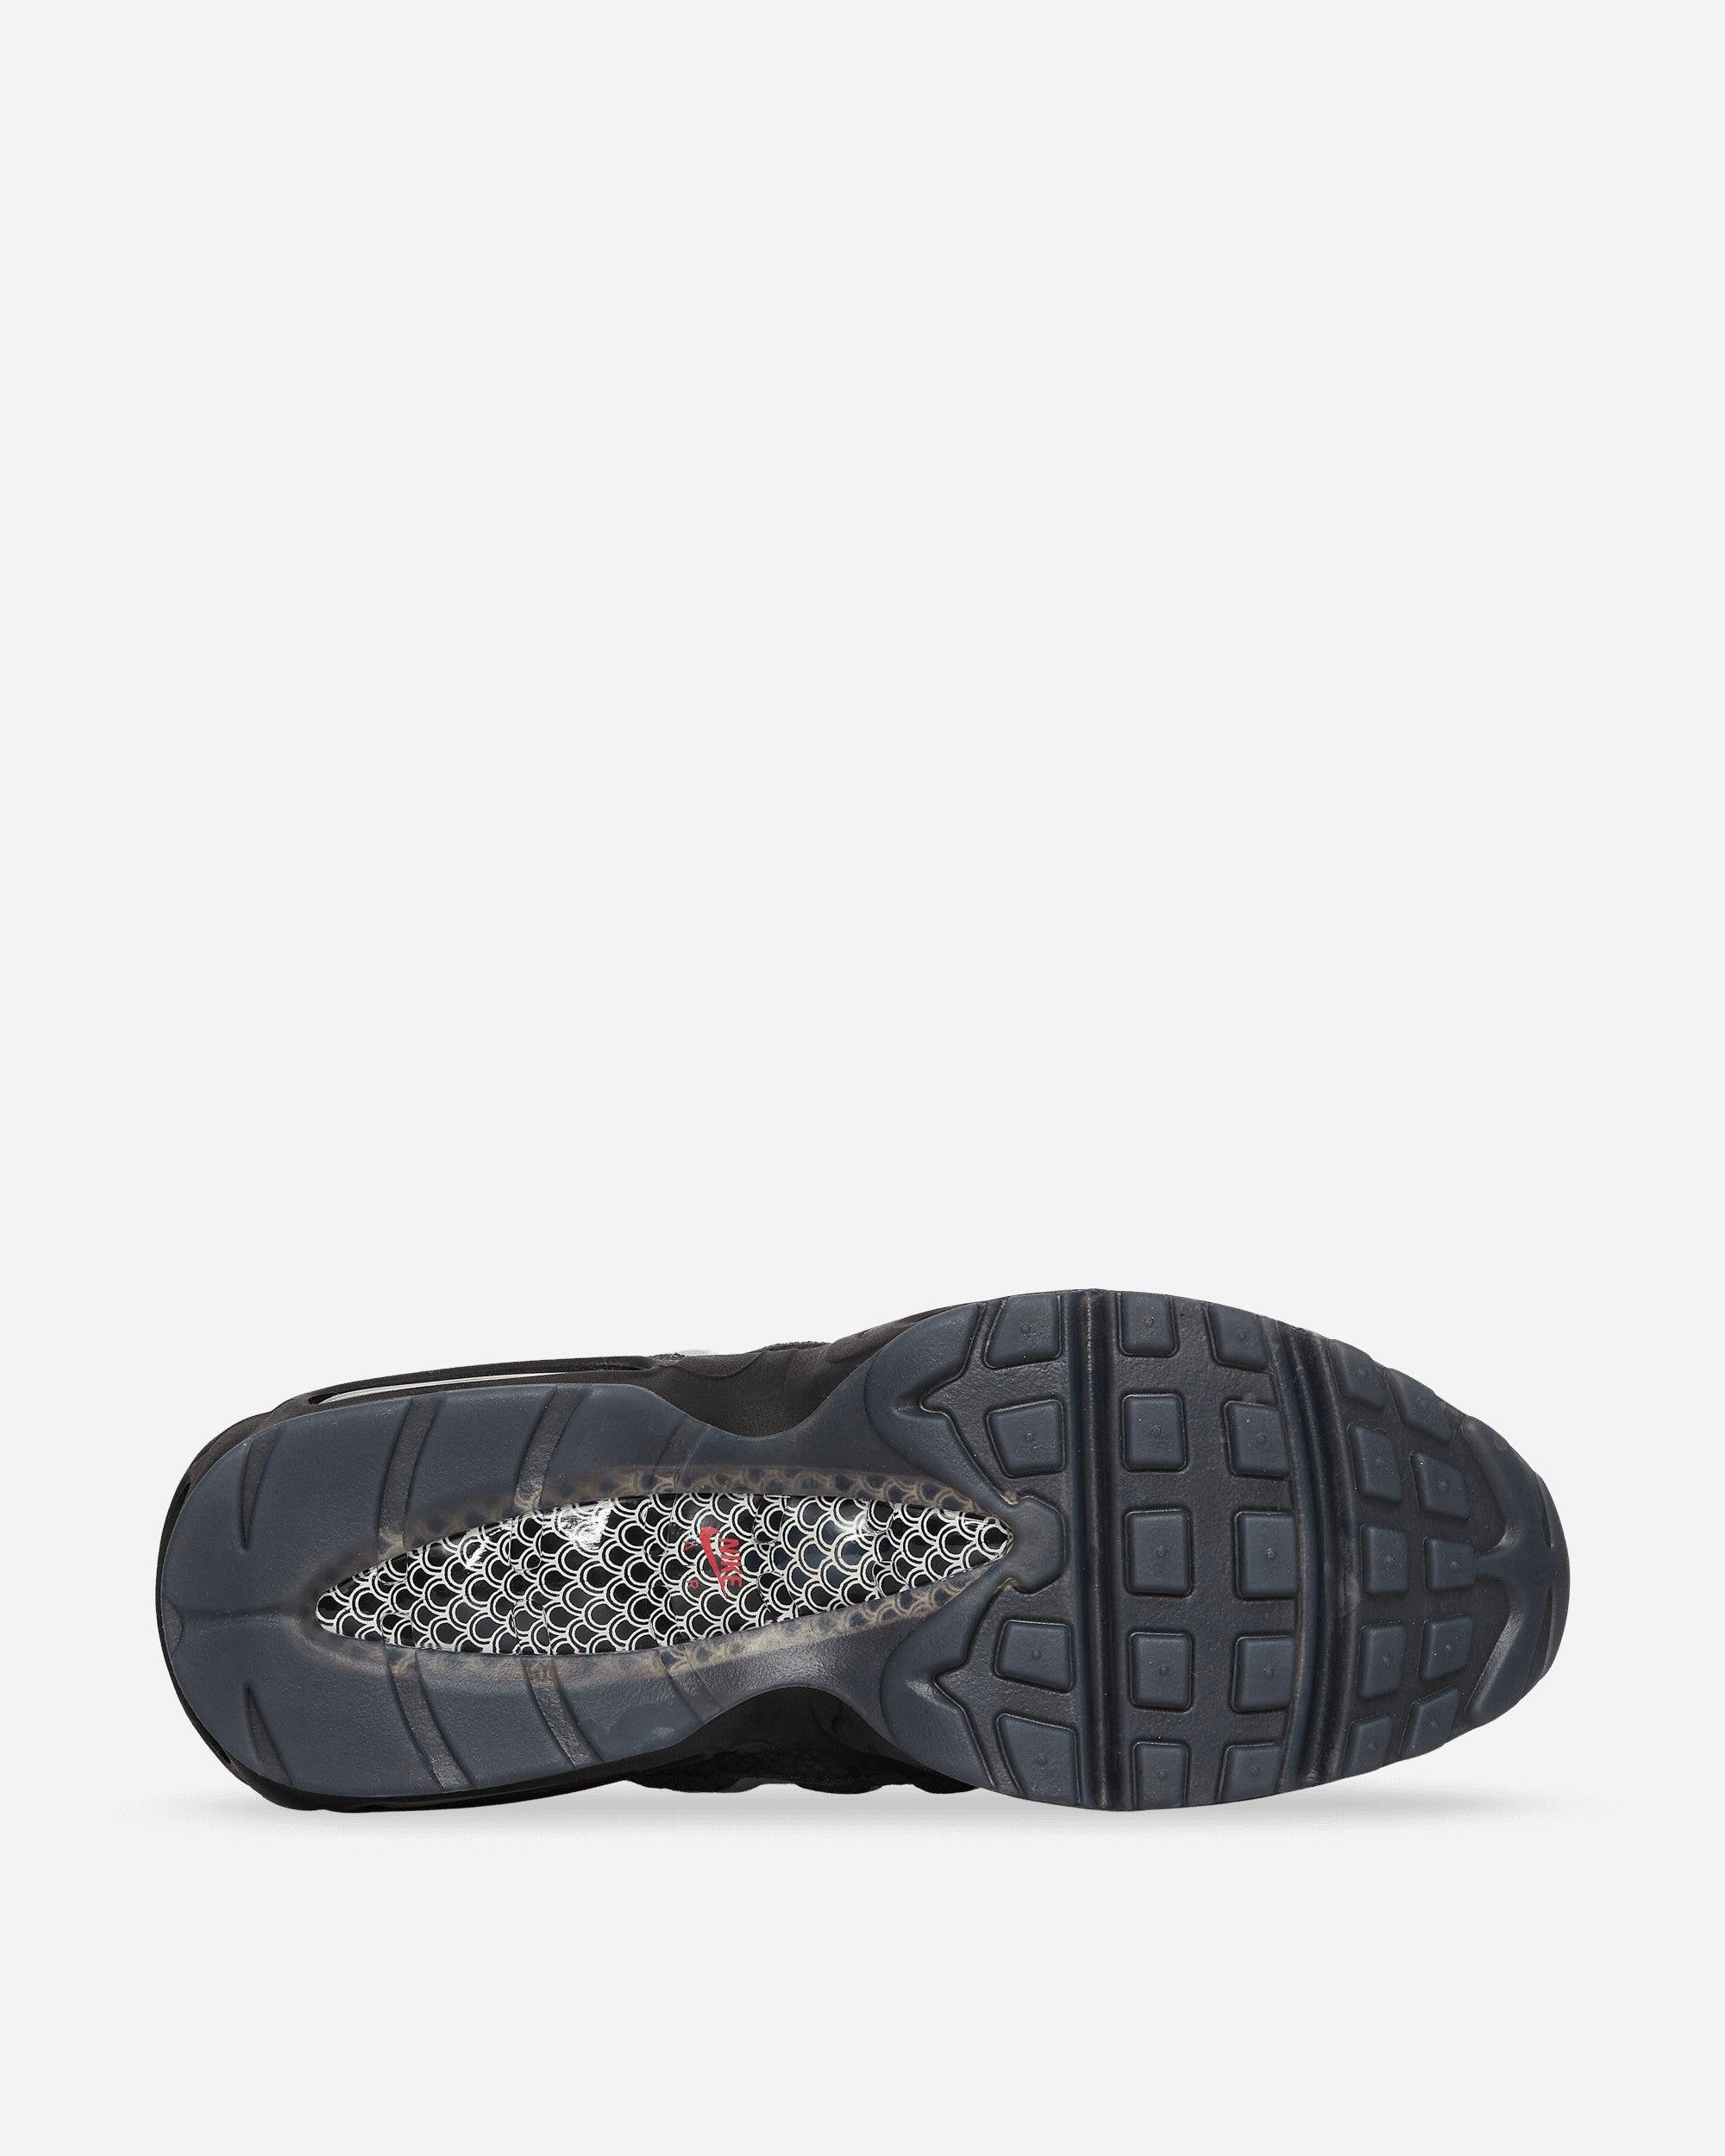 per ongeluk type vers Nike Air Max 95 Premium Sneakers Black / White for Men | Lyst